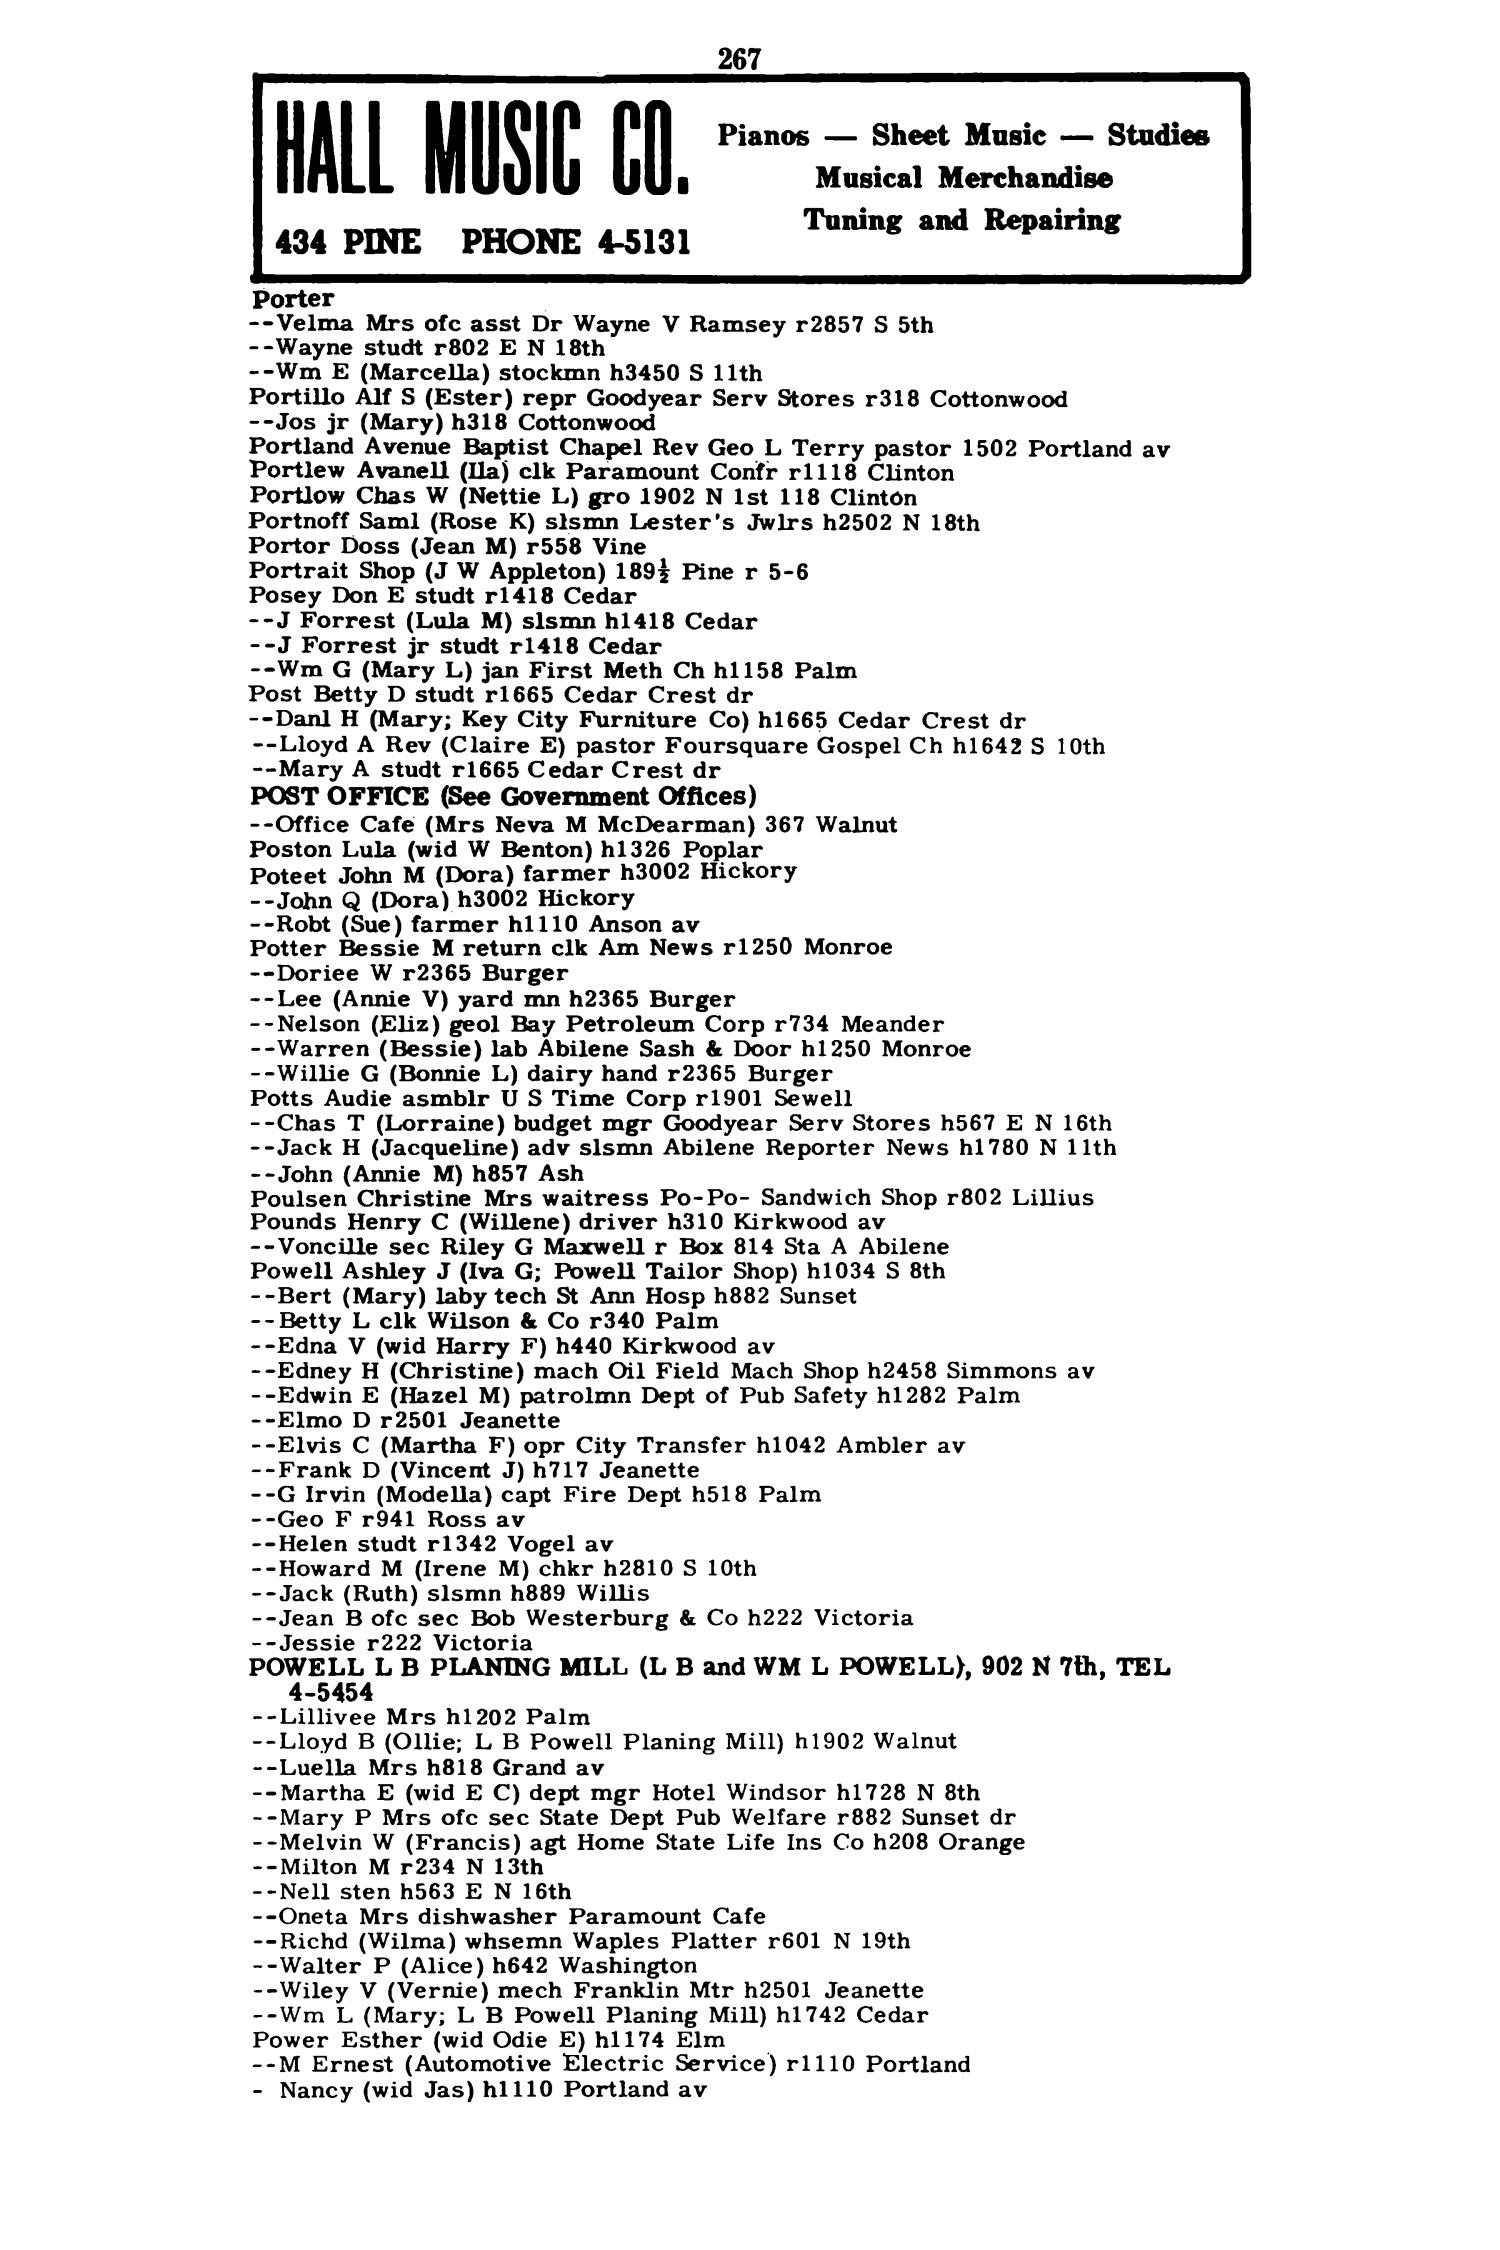 Worley's Abilene (Taylor County, Texas) City Directory, 1951
                                                
                                                    267
                                                